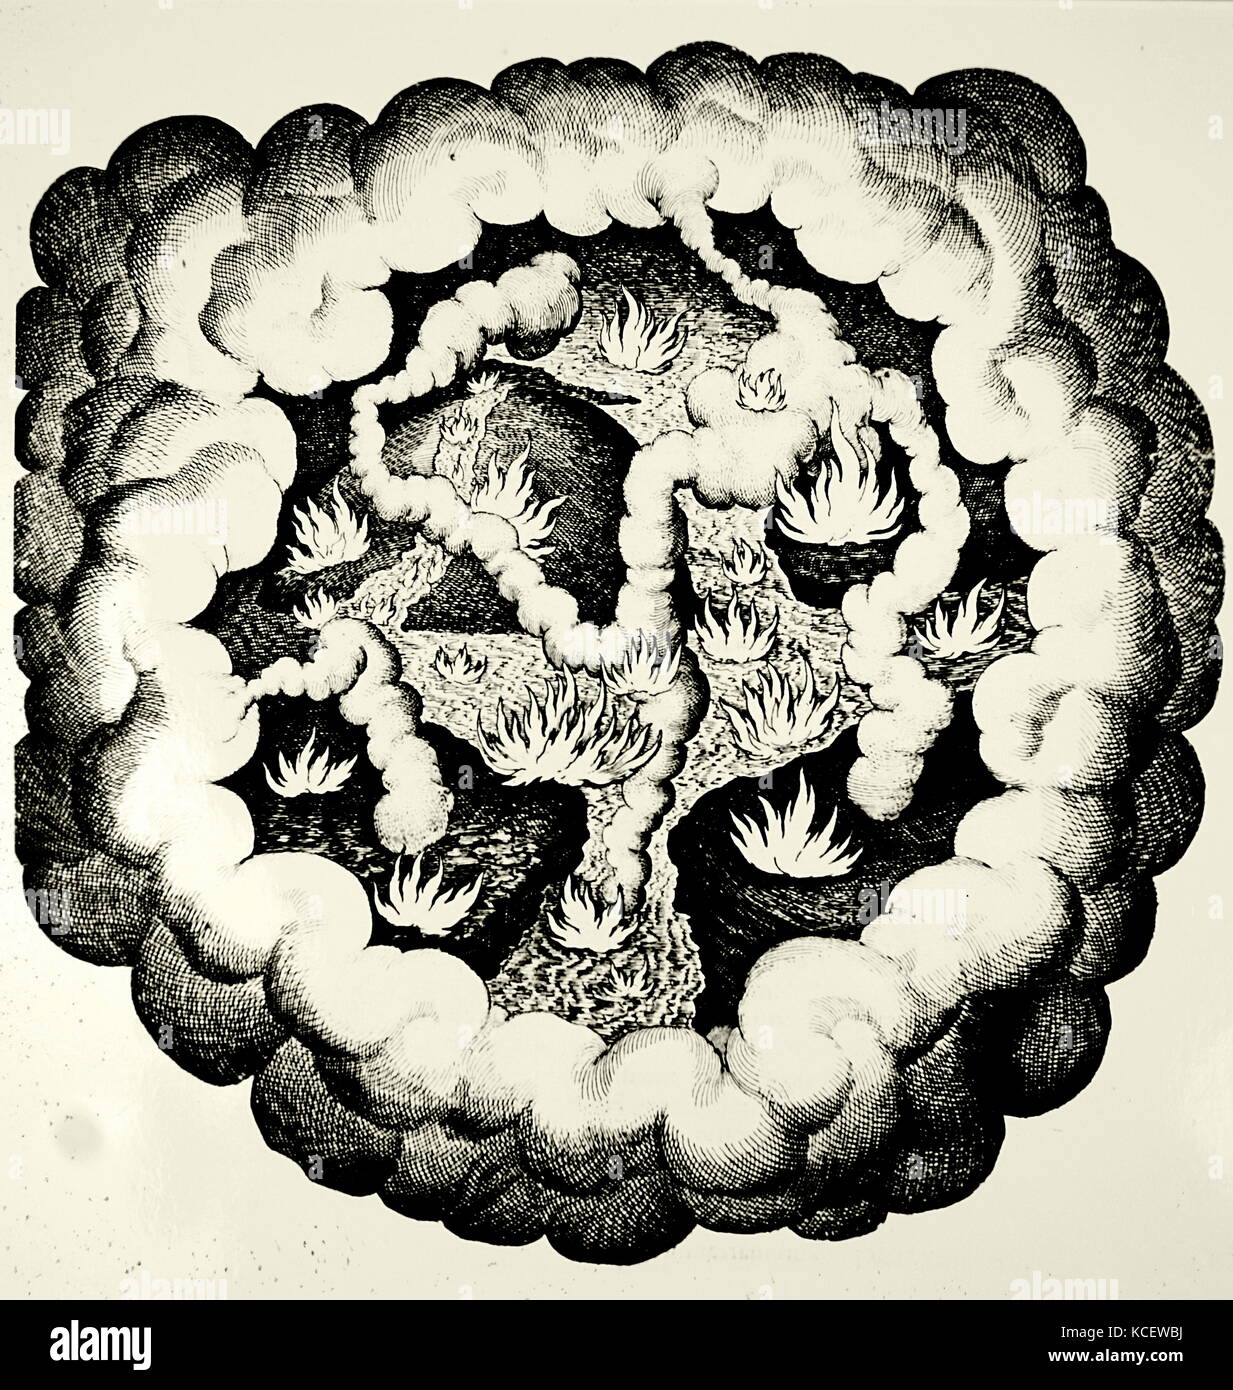 Chaos élémentaire, montrant la lutte entre le 'qualités' chaud et froid, sec et humide. Illustré par Robert Fludd (1574-1637) un médecin anglais Paracelsian avec tant scientifique que des intérêts occultes. En date du 17e siècle Banque D'Images